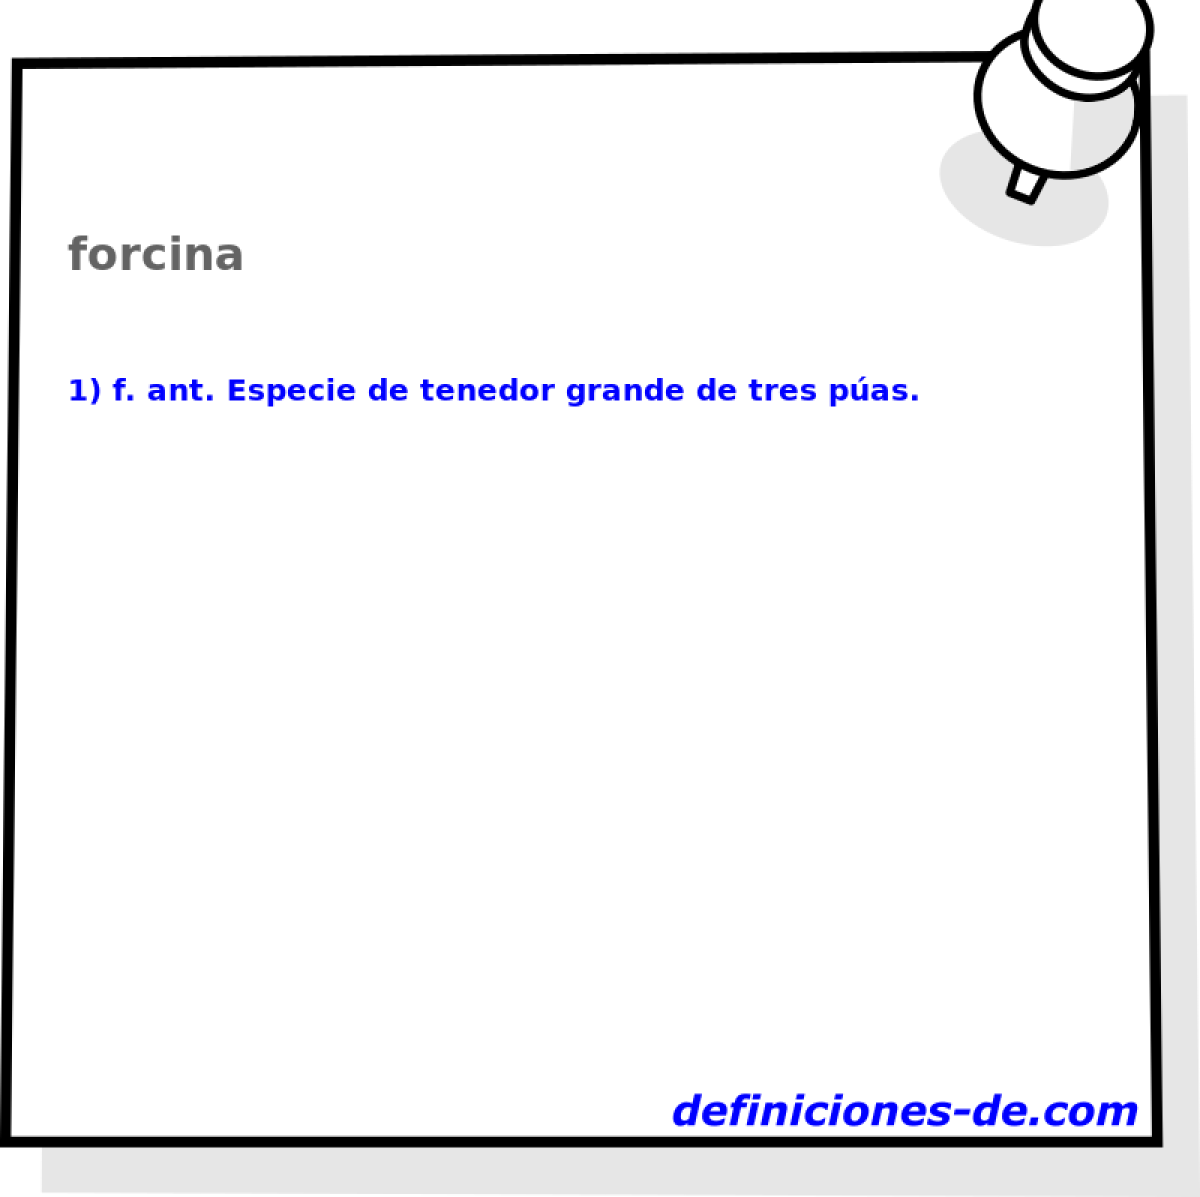 forcina 